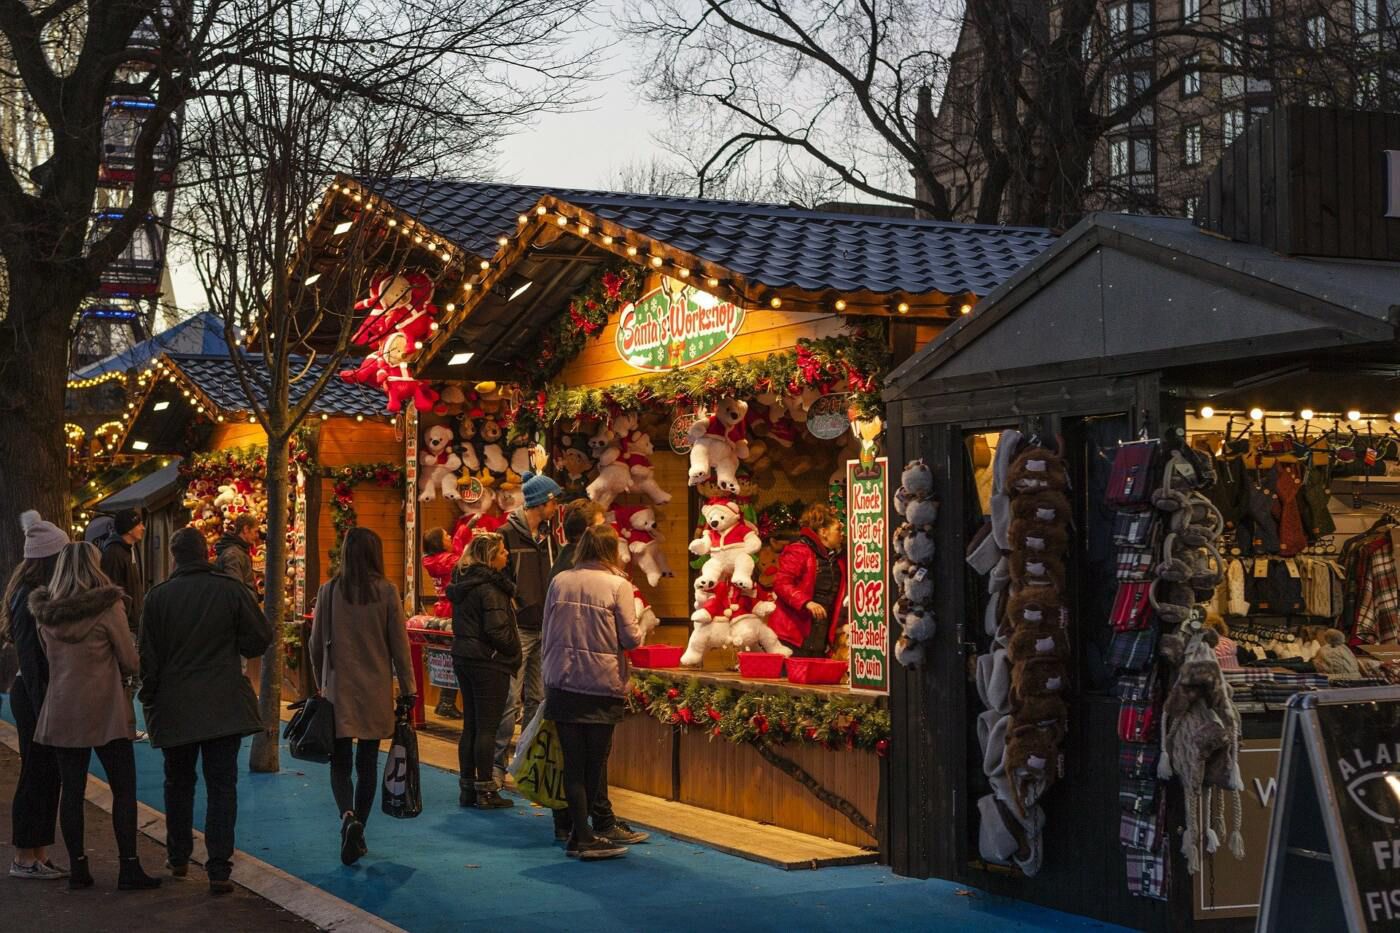 Alle Jahre wieder: Weihnachtsmärkte in Deiner Nähe!